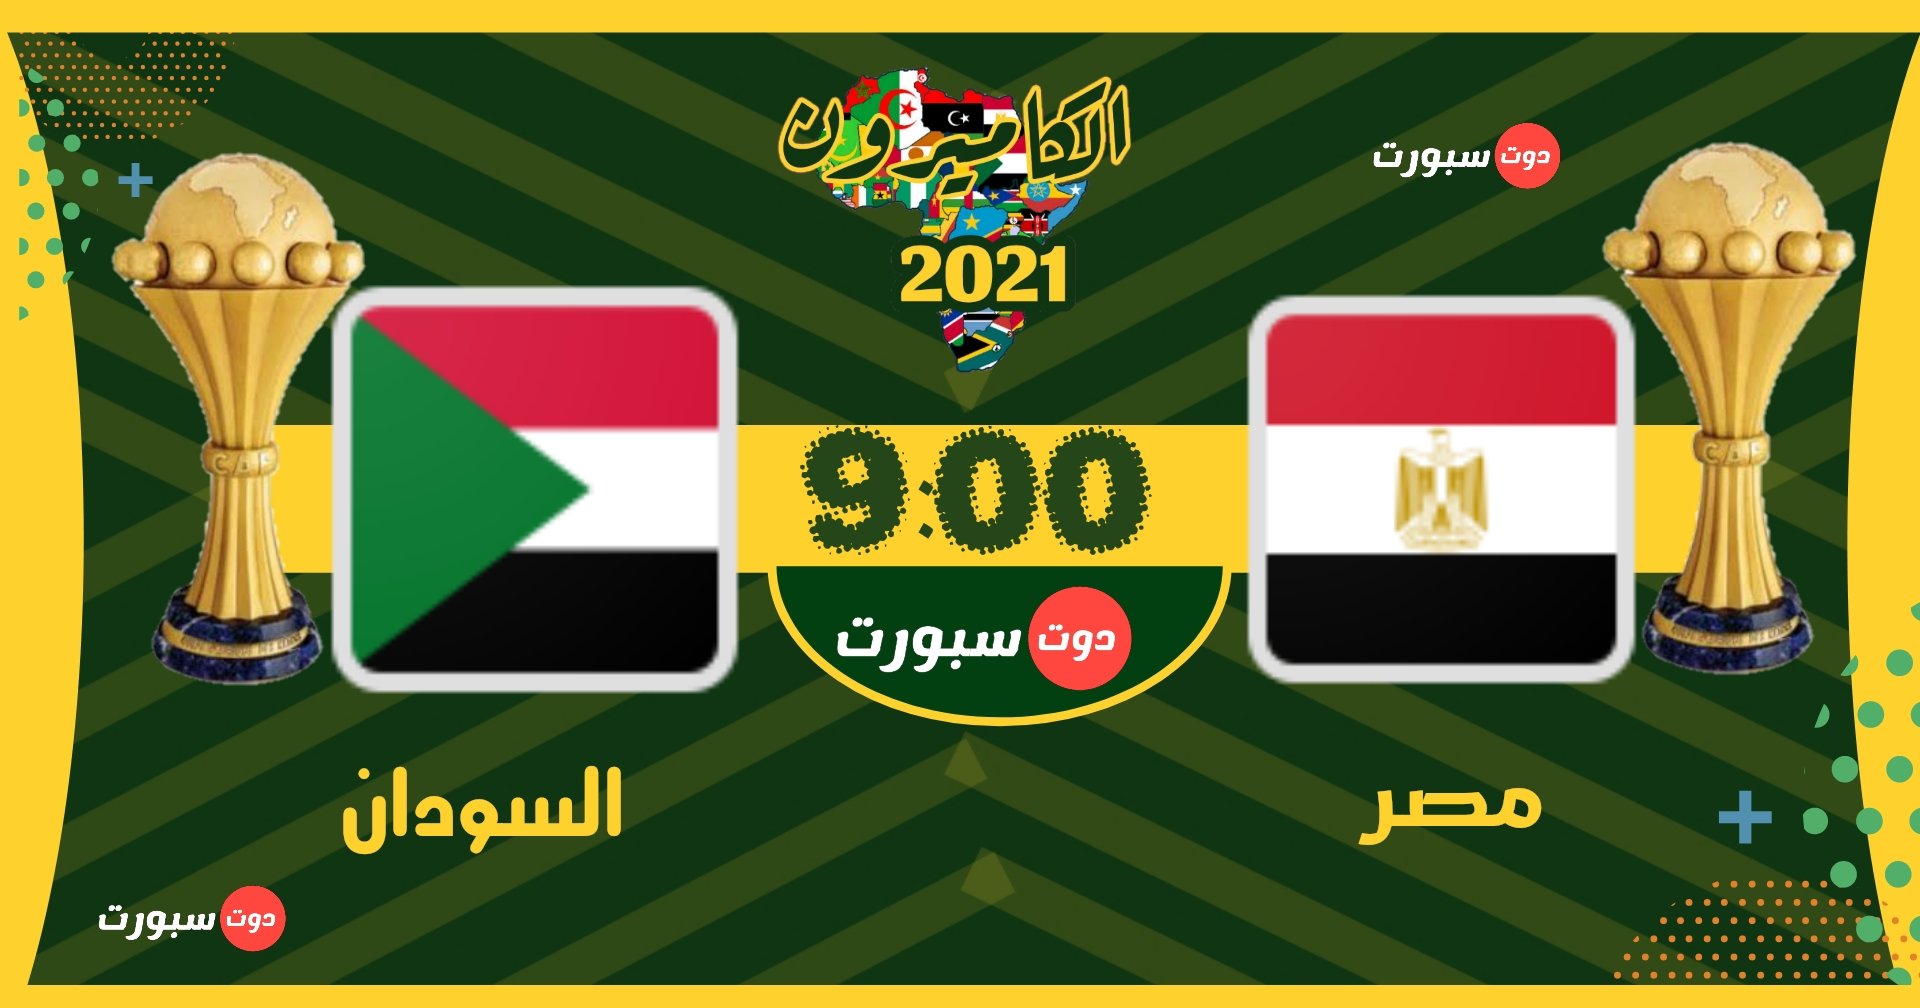 نتيجة مباراة السودان اليوم